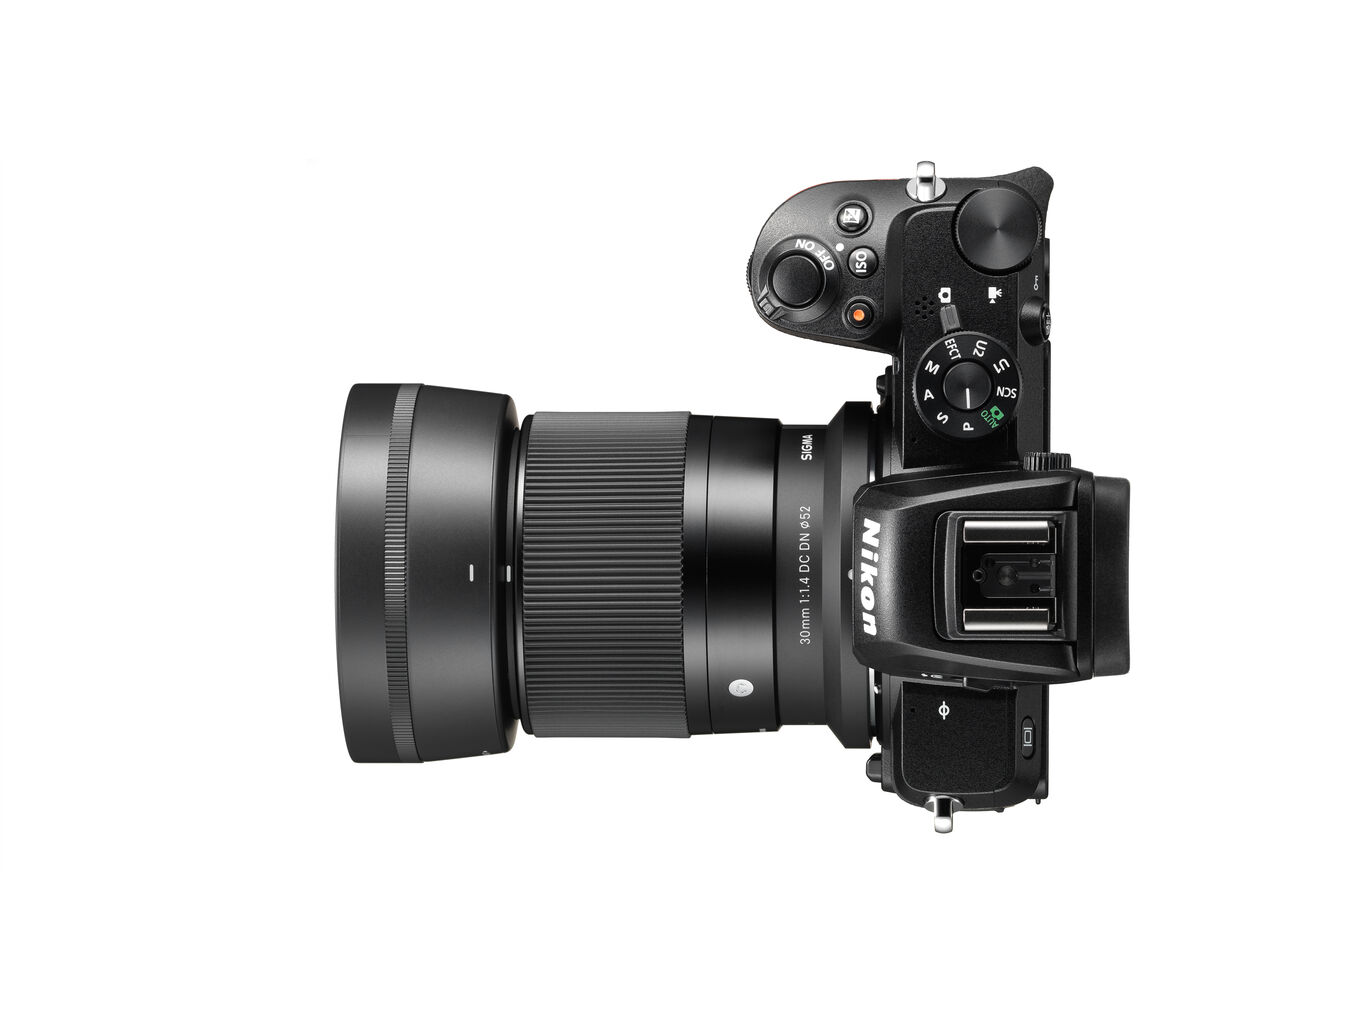 Obiektyw Sigma 30mm f/1,4 DC DN Contemporary (Nikon Z) - 3 letnia gwarancja